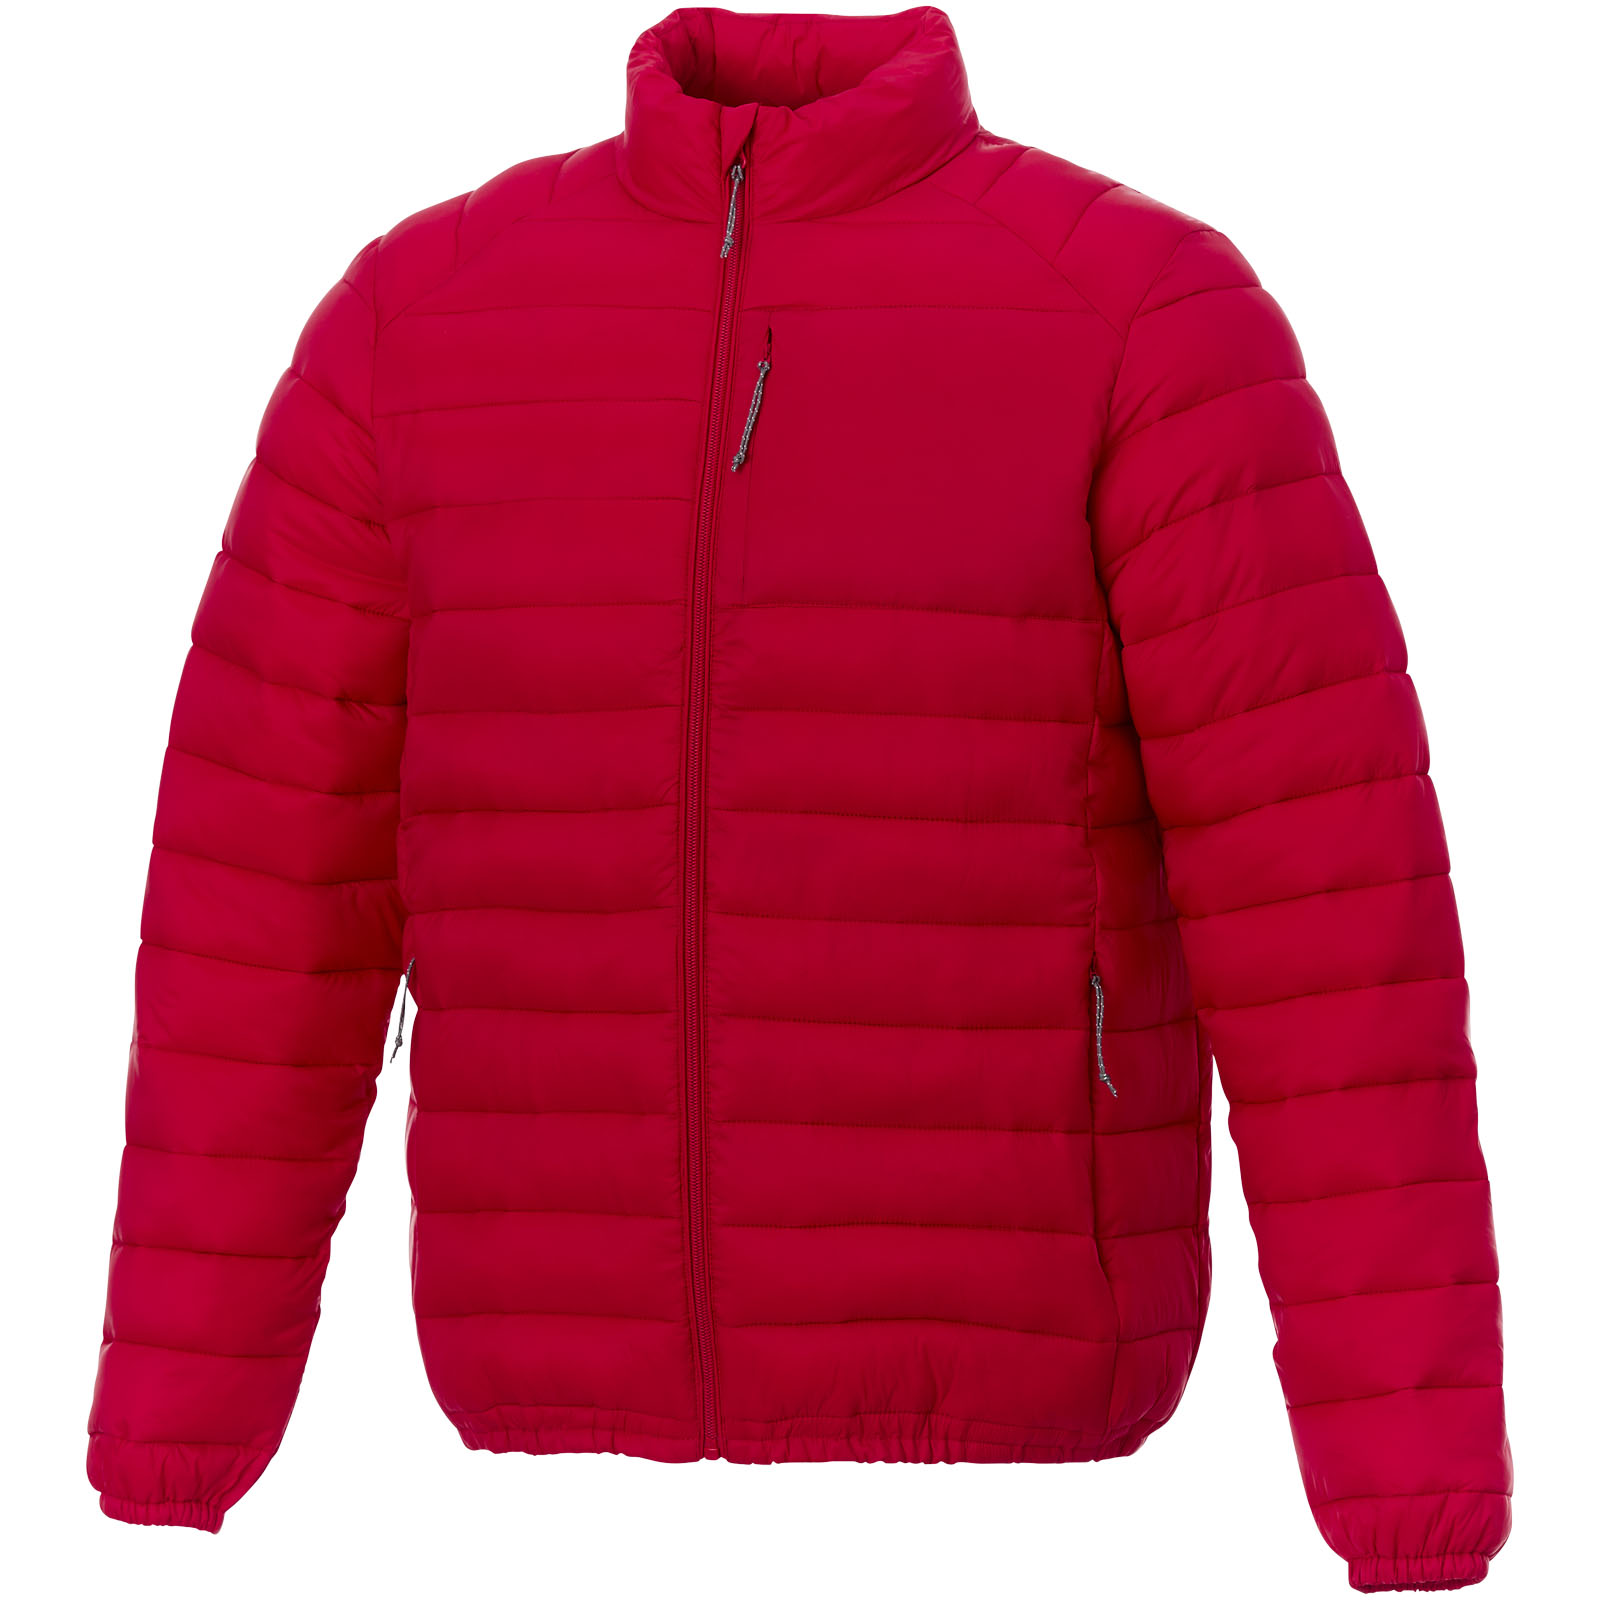 Clothing - Athenas men's insulated jacket